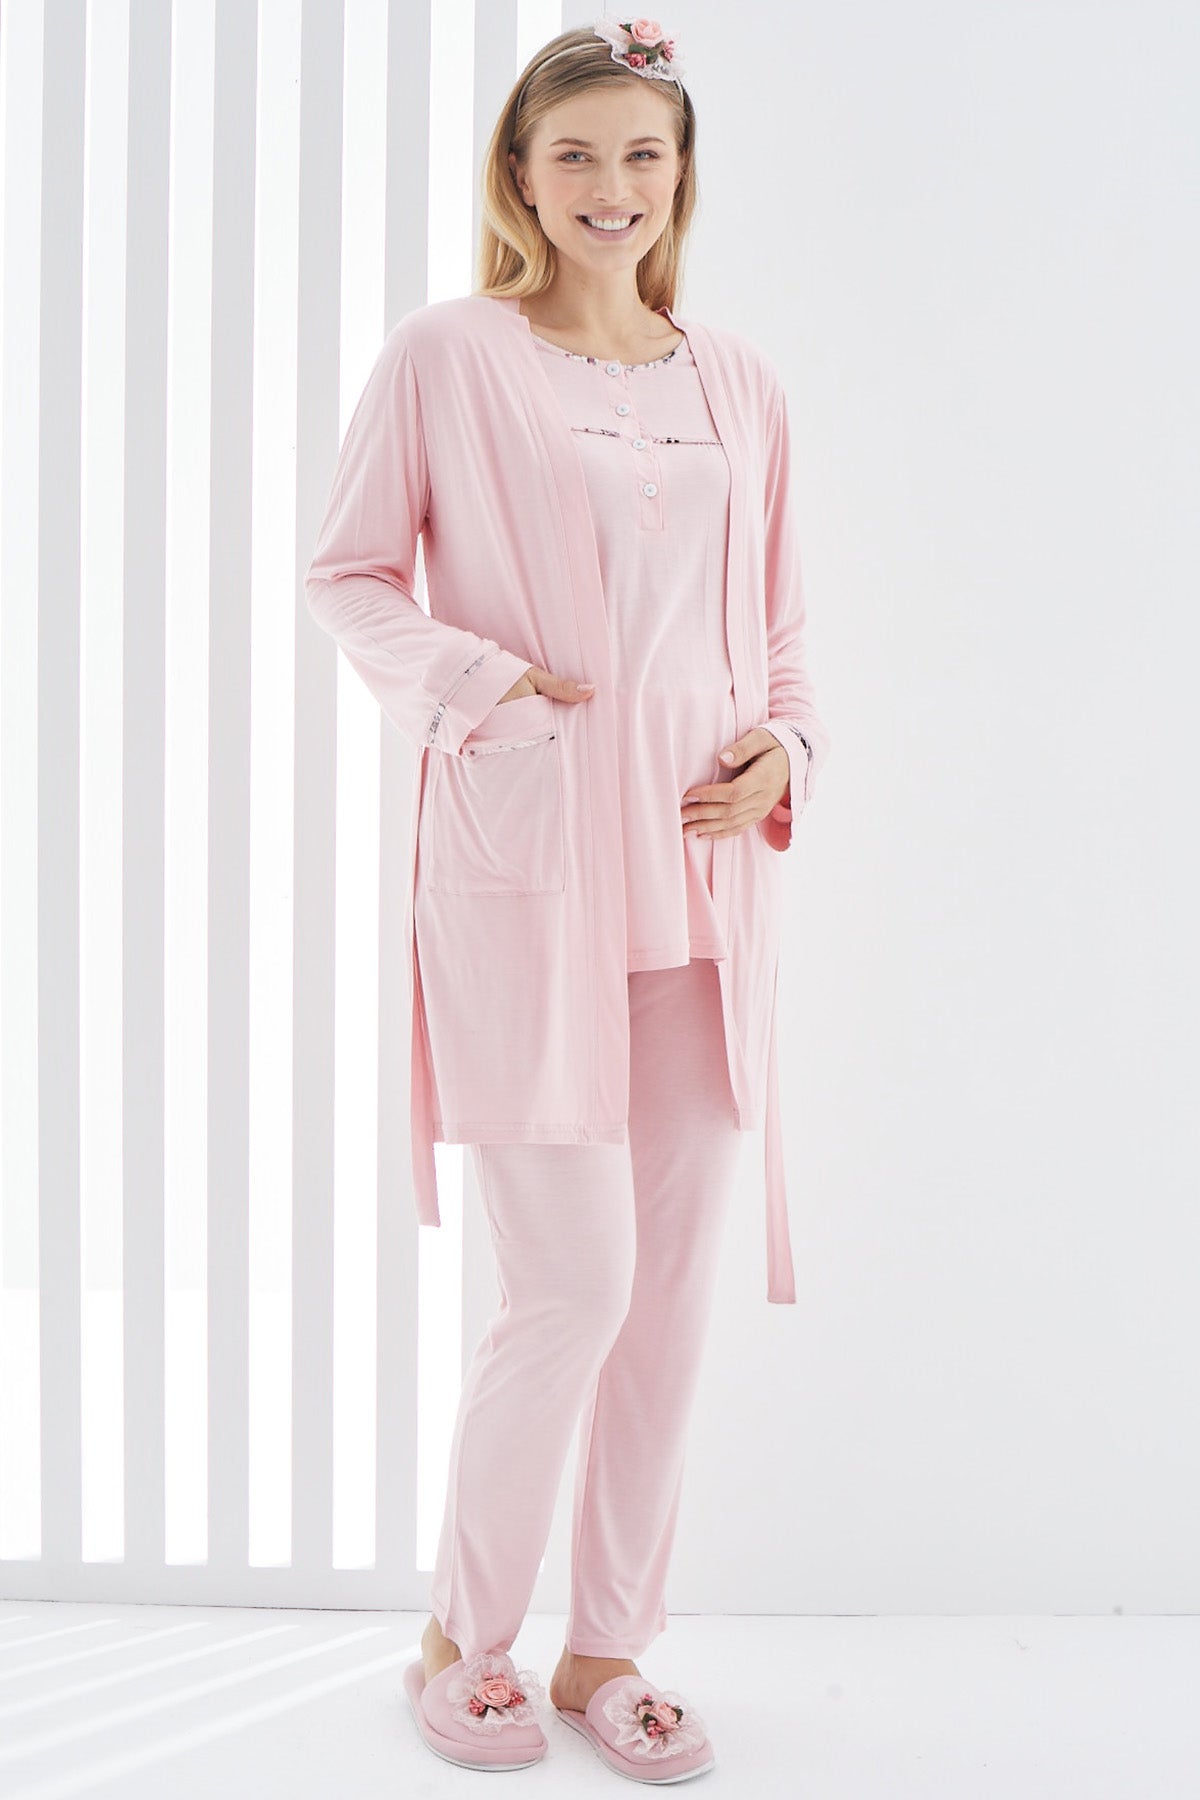 Stripe 3-Pieces Maternity & Nursing Pajamas With Robe Pink - 3408